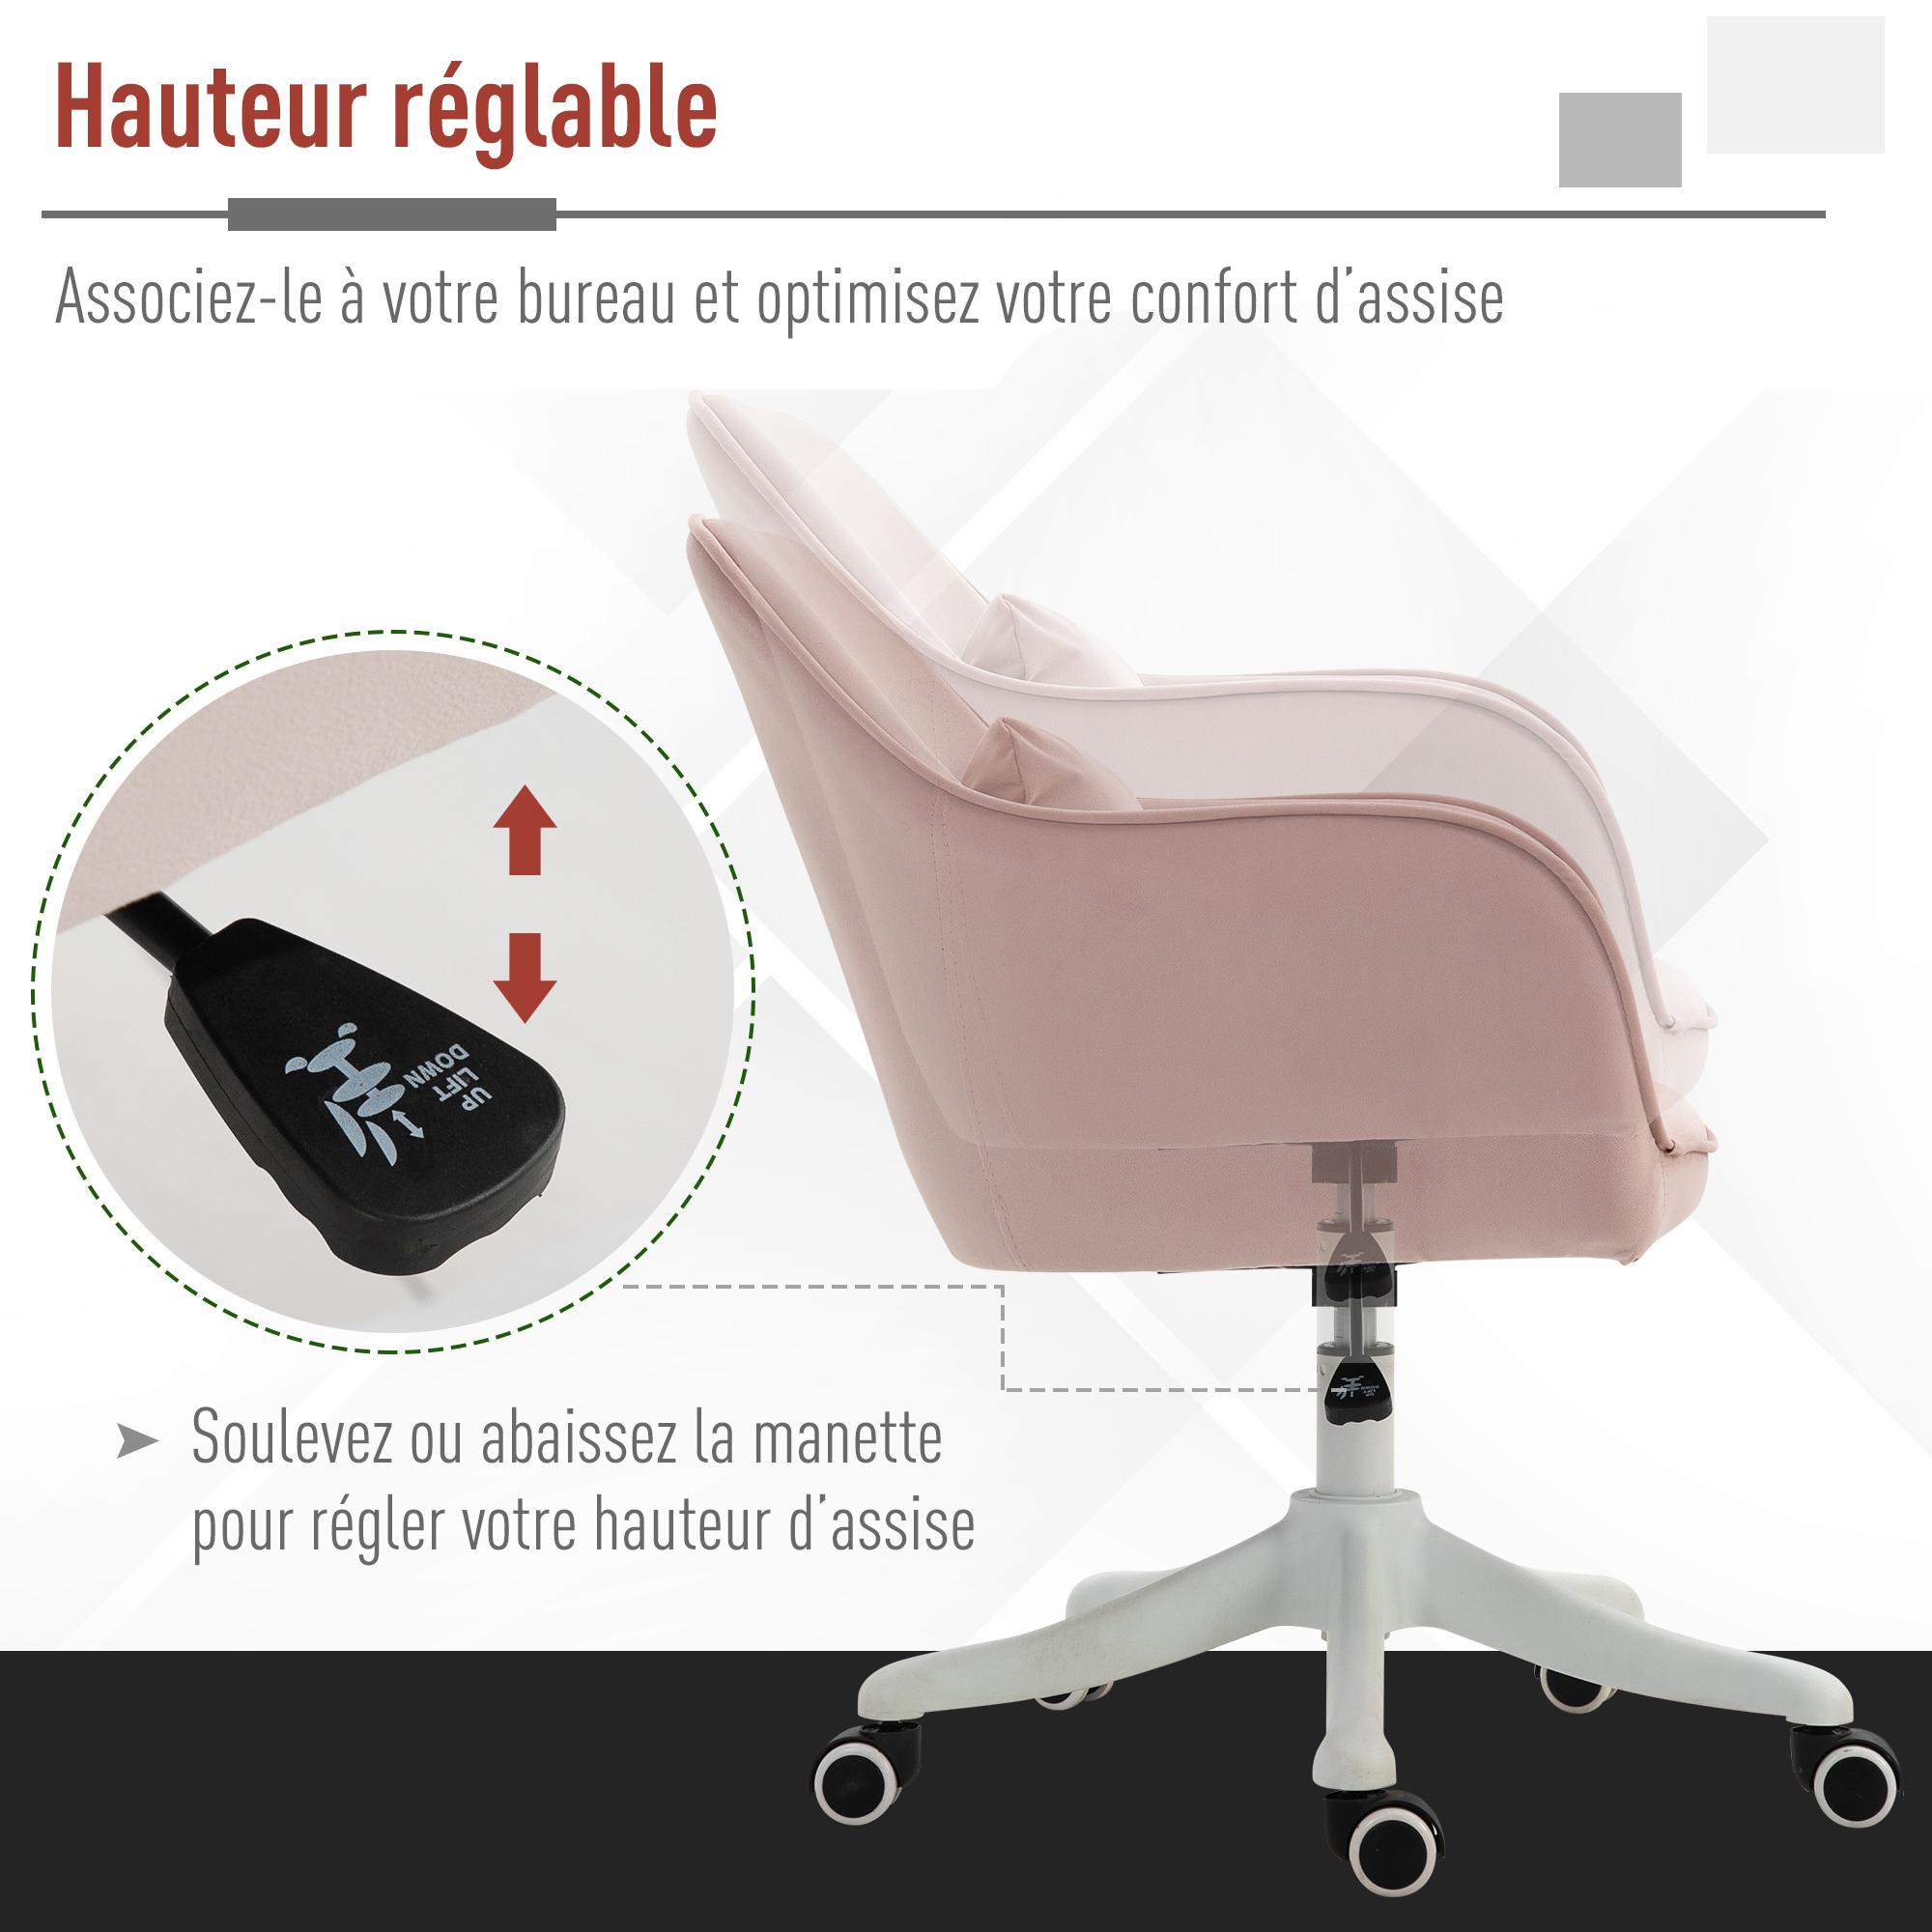 Homcom - Chaise de bureau velours fauteuil bureau massant coussin lombaire  intégré hauteur réglable pivotante 360° rose poudré